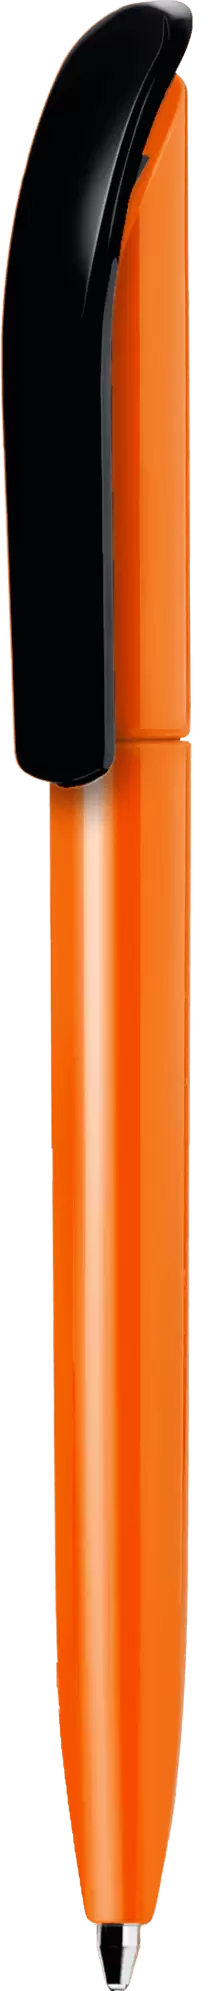 Ручка VIVALDI COLOR Оранжевая с черным 1336-05-08